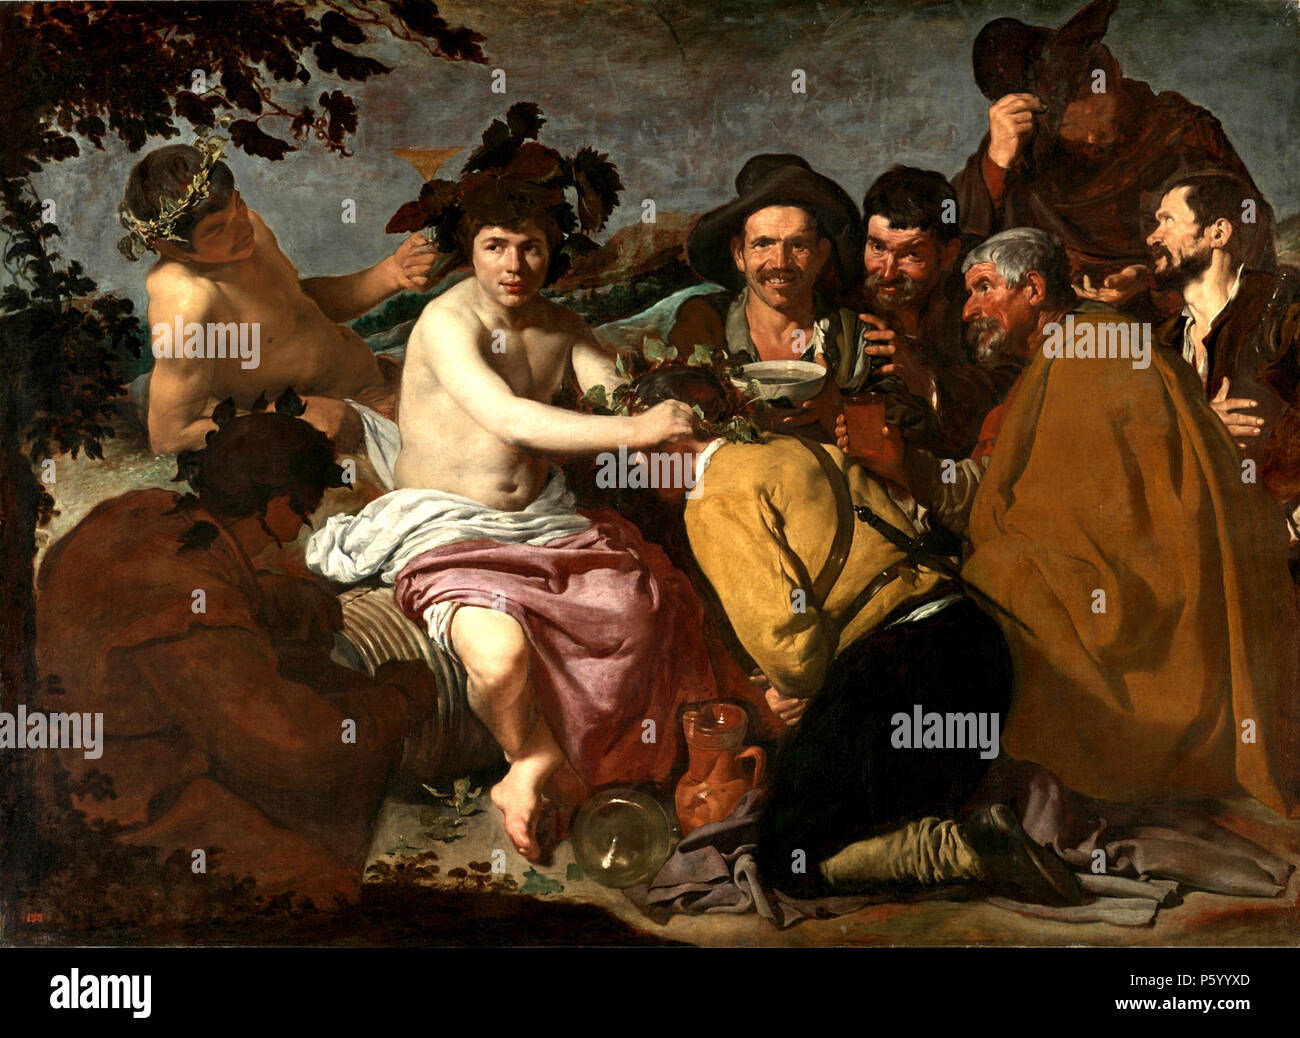 El Triunfo de Baco o Los borrachos 1629, el Triunfo de Baco, los borrachos por Diego Velázquez Foto de stock